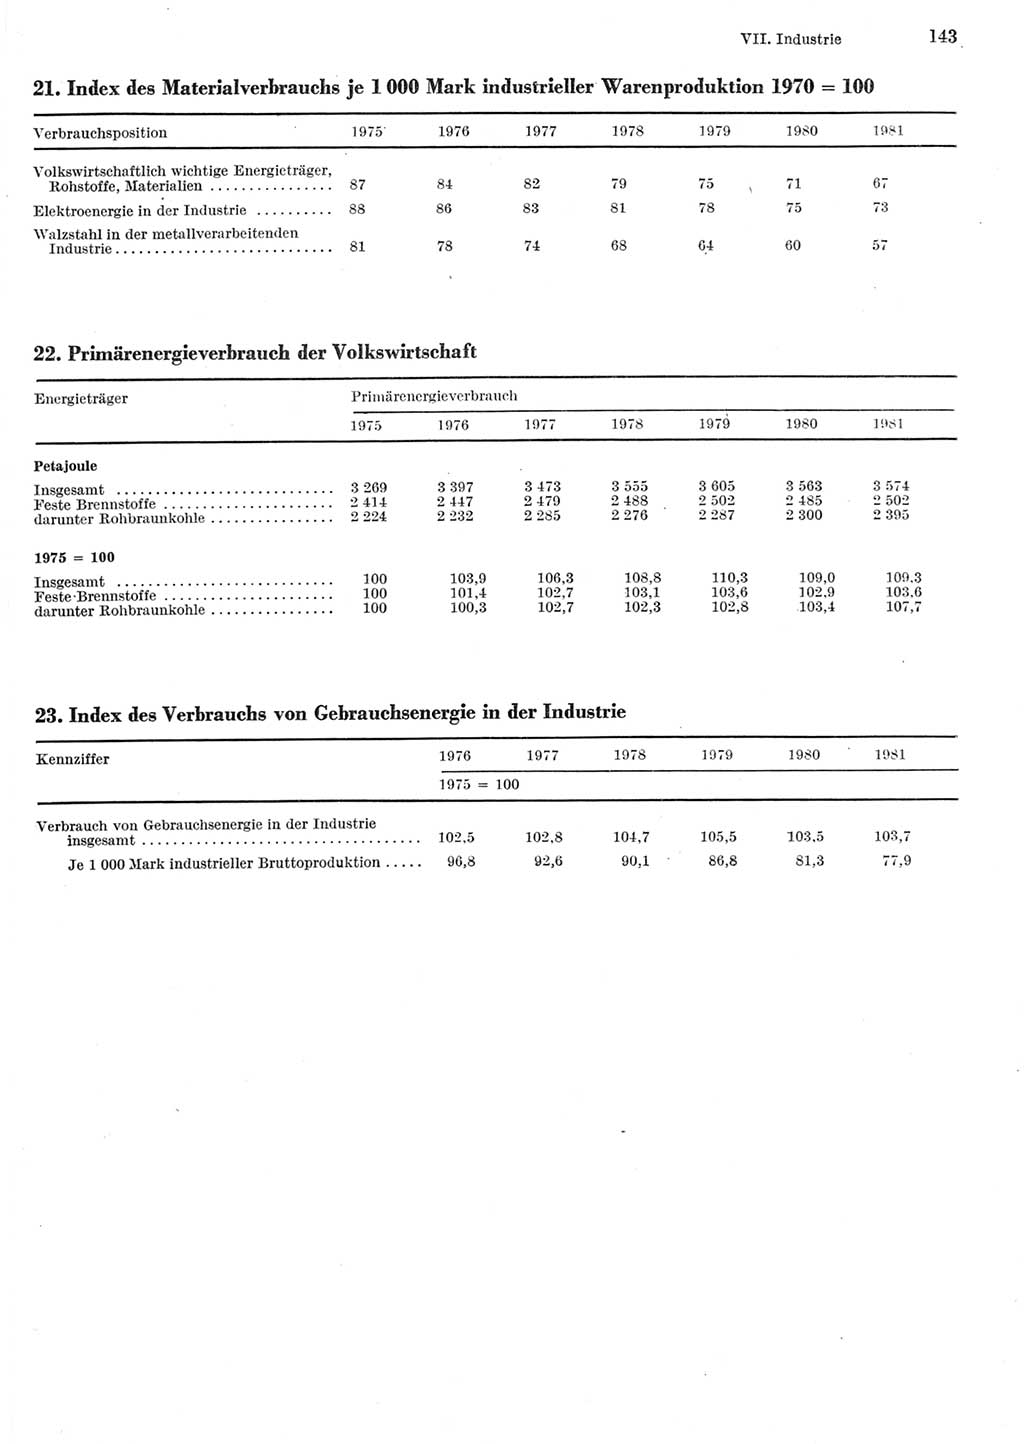 Statistisches Jahrbuch der Deutschen Demokratischen Republik (DDR) 1982, Seite 143 (Stat. Jb. DDR 1982, S. 143)